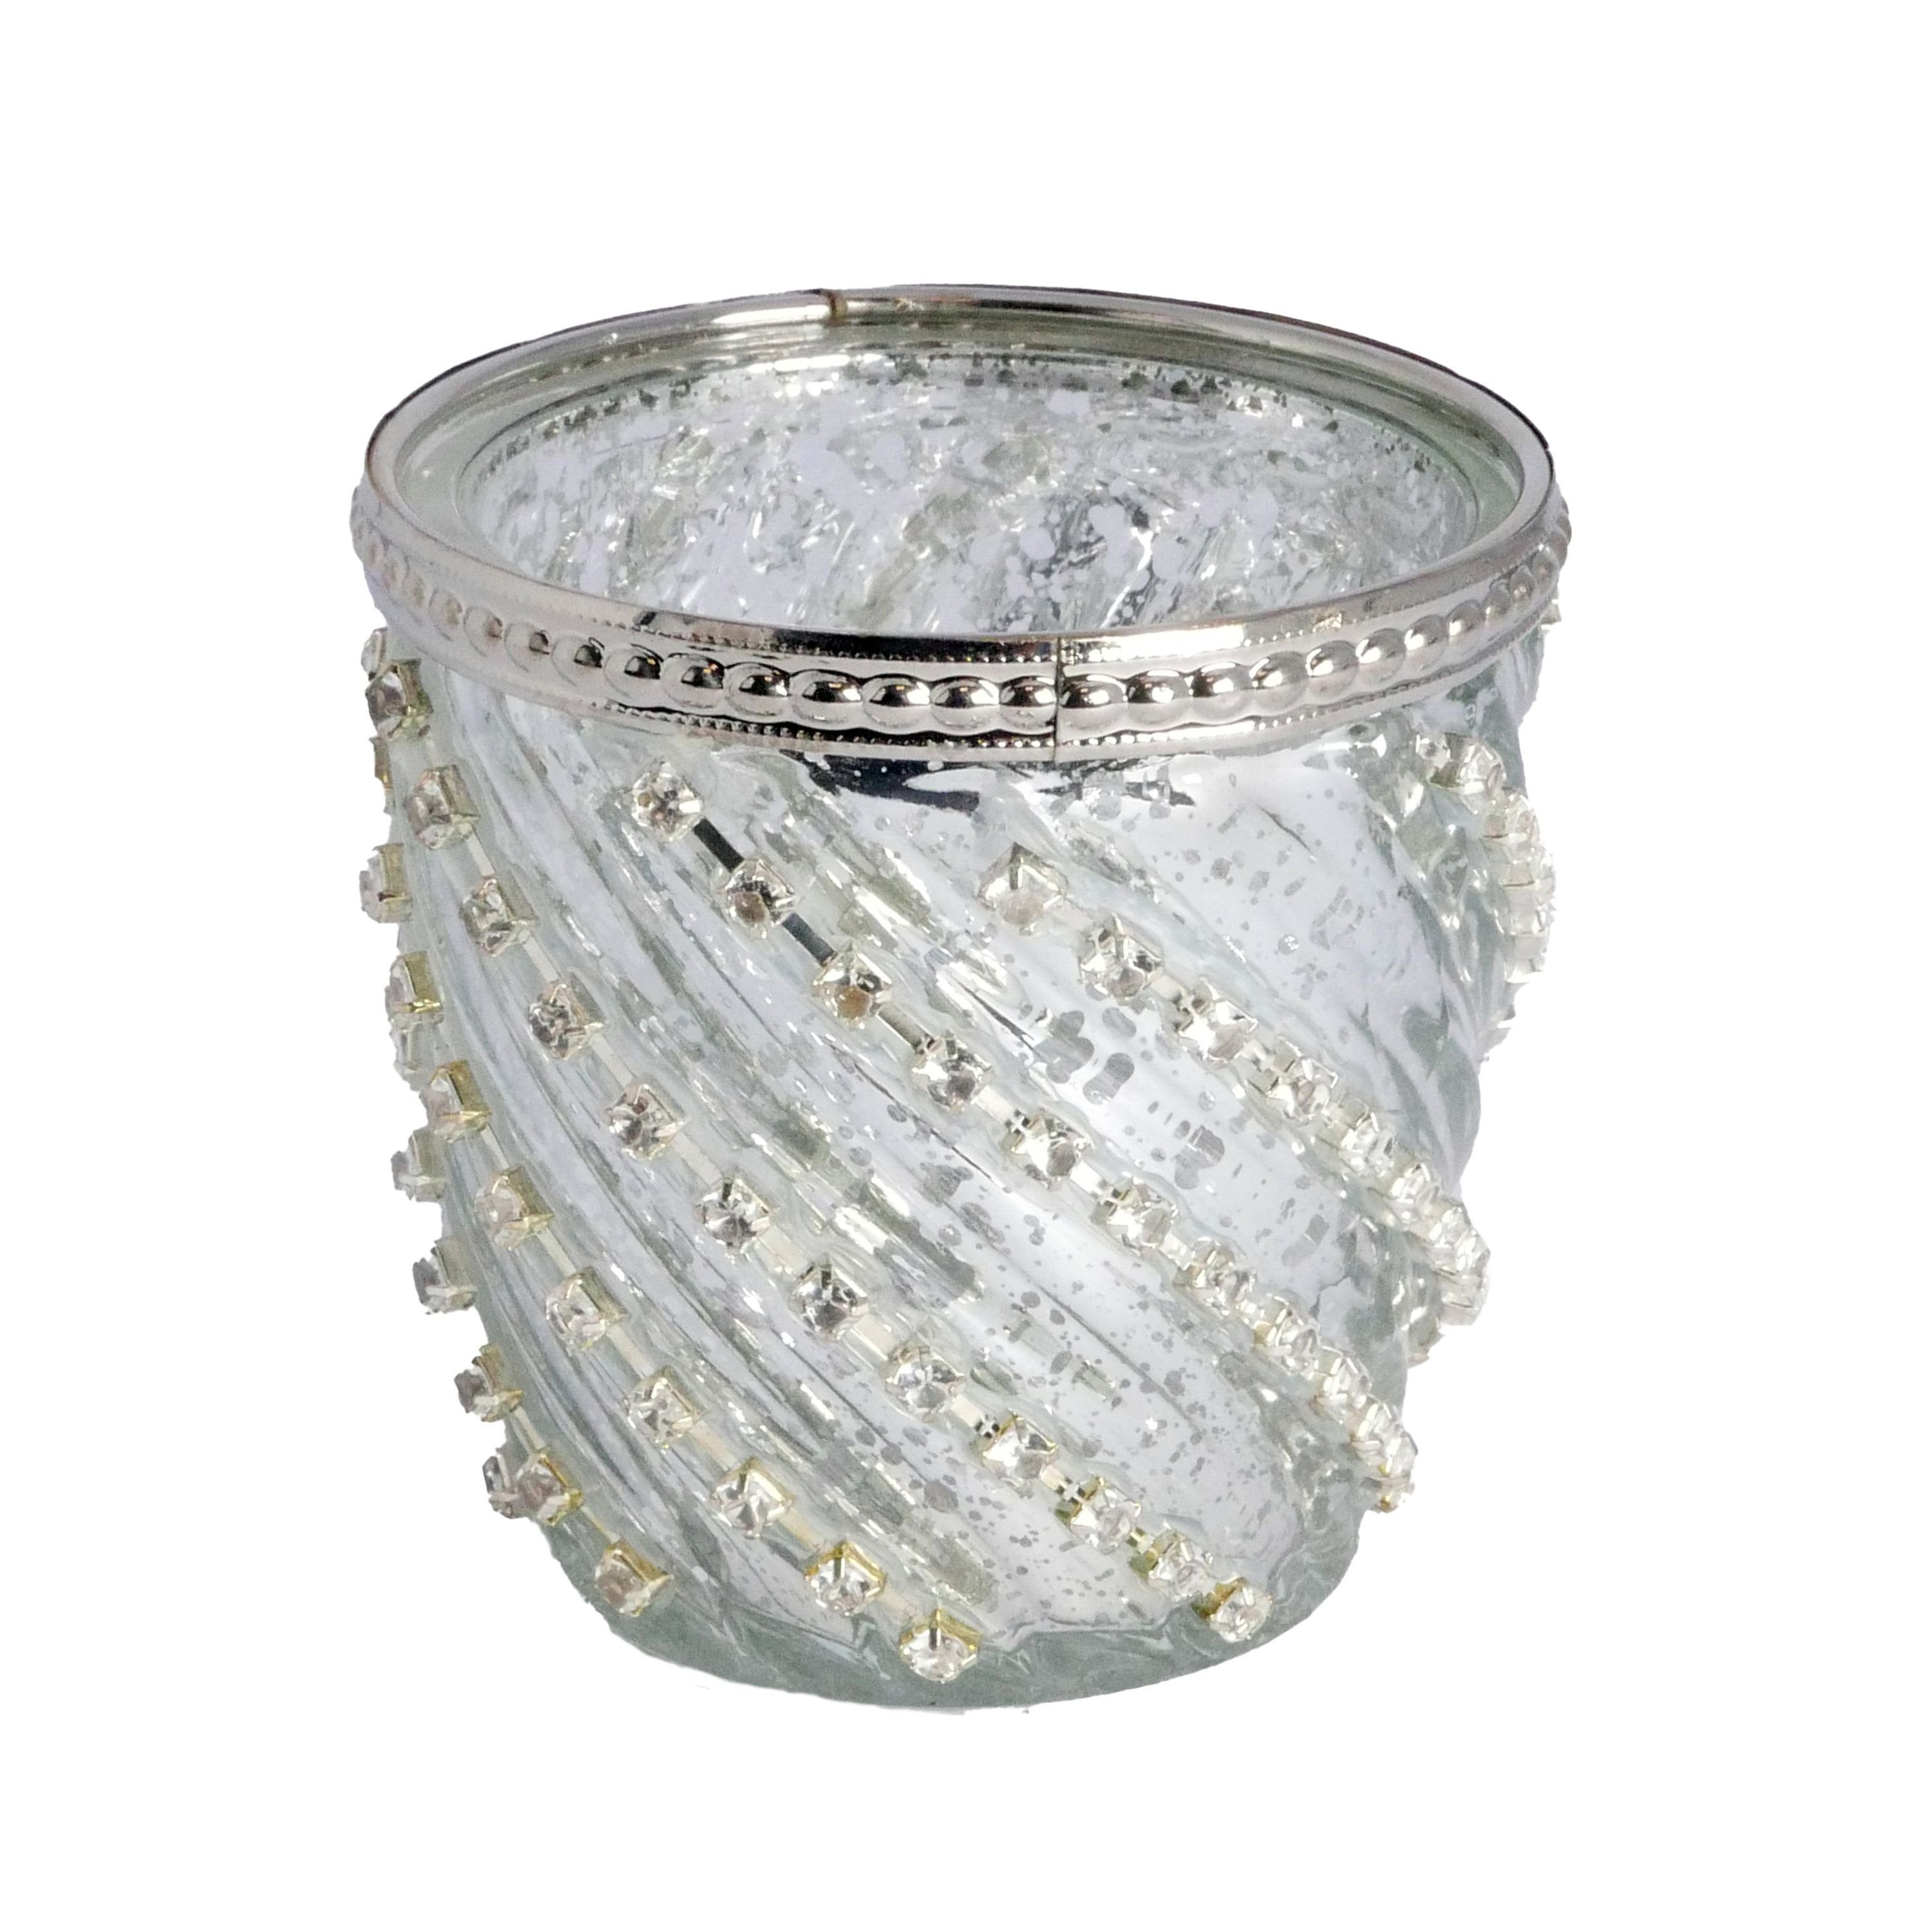 B&S Windlicht silber Teelichtglas Zierrand Metall